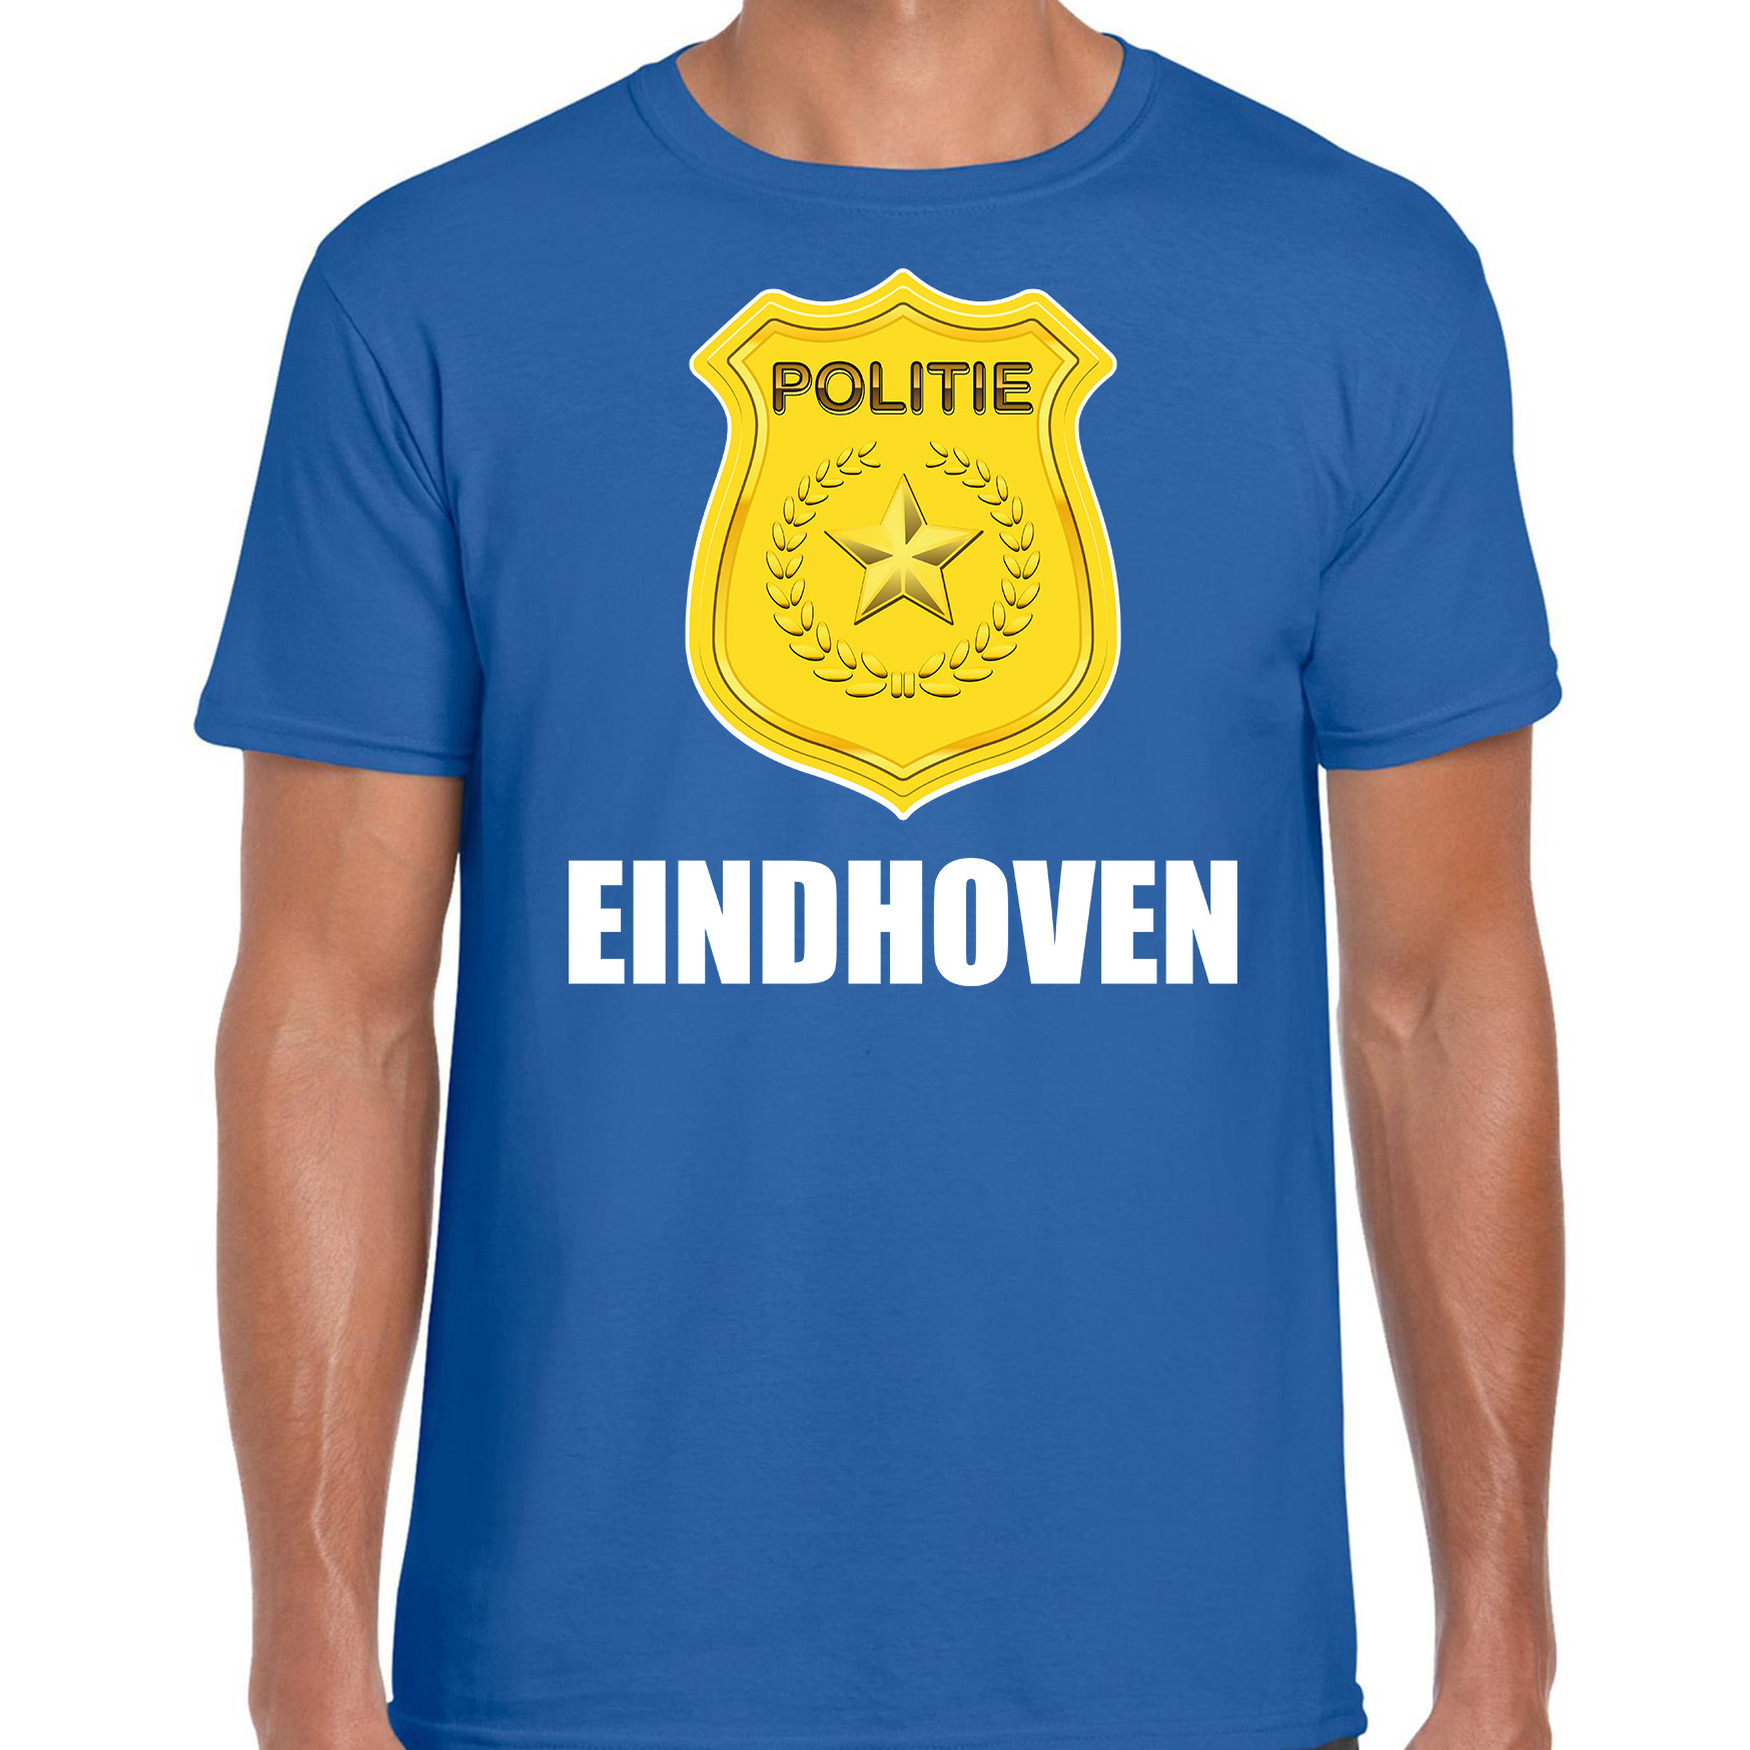 Politie embleem Eindhoven carnaval verkleed t-shirt blauw voor heren